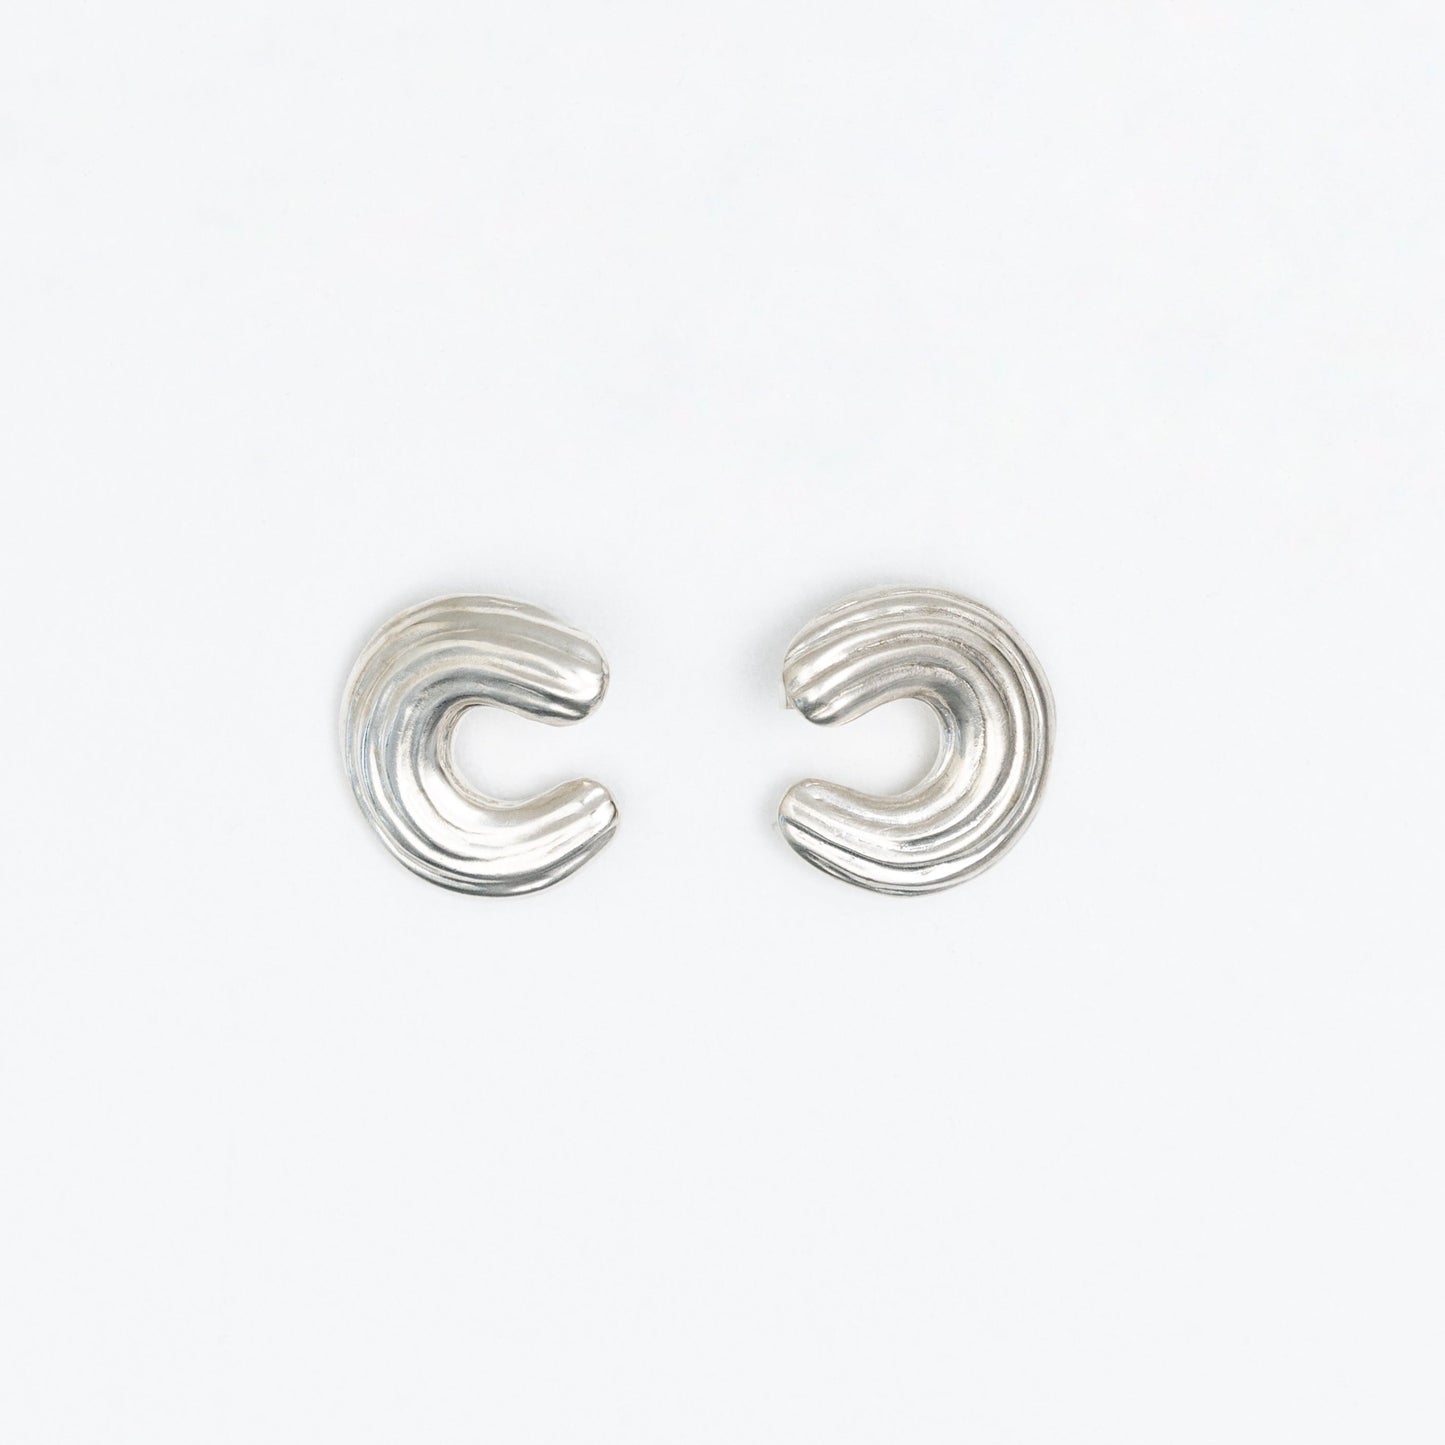 Pair of silver earrings